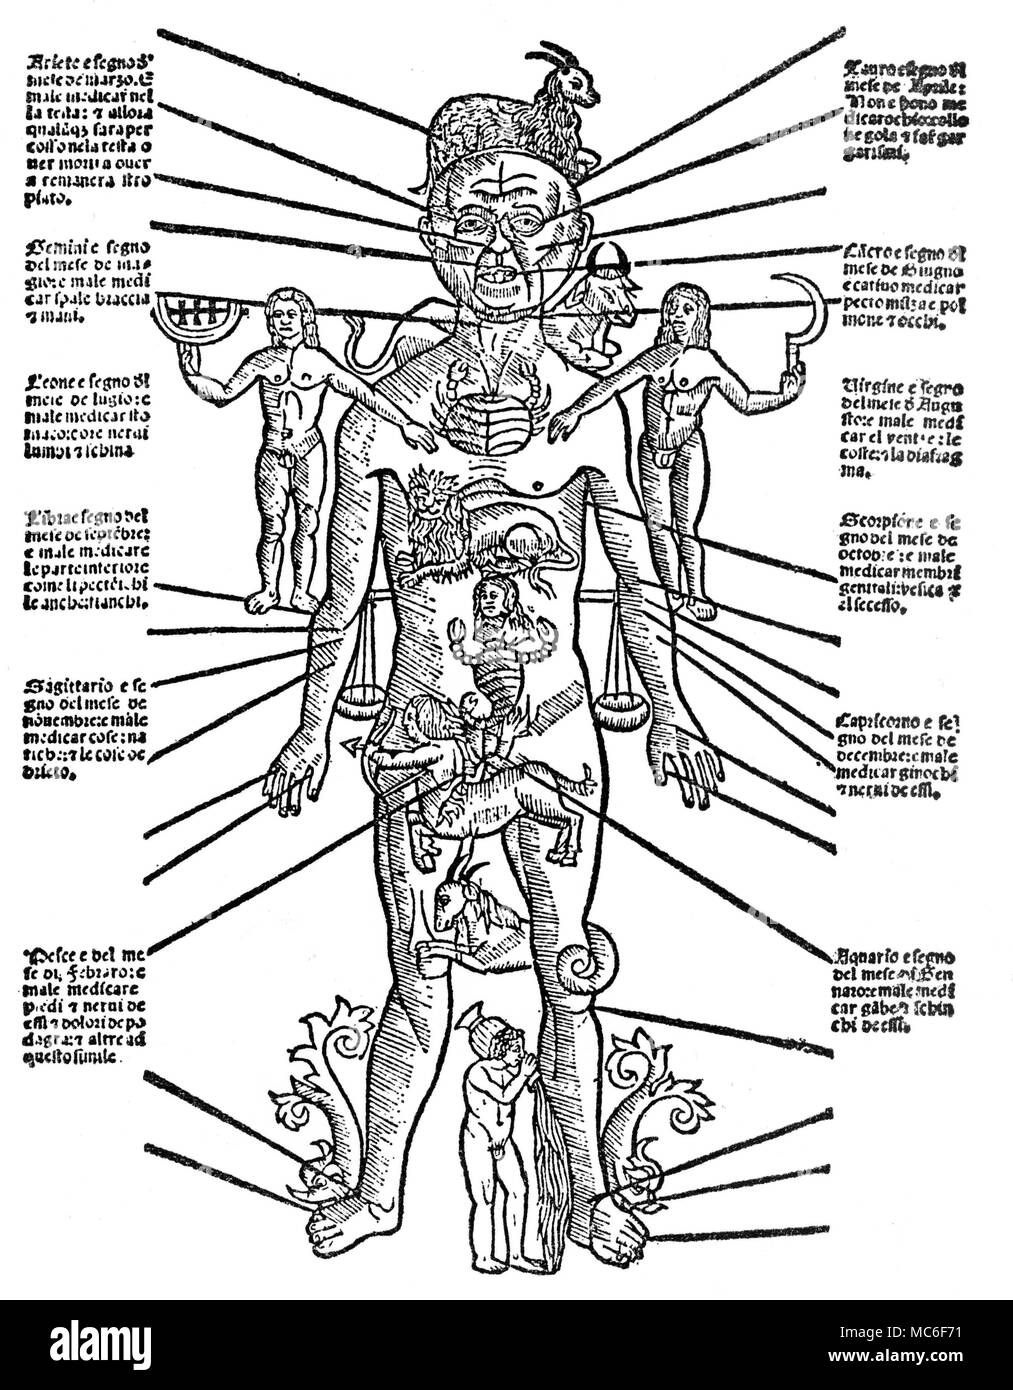 Uomo zodiacale, con ciascuno dei dodici segni attribuito alle parti esterne del corpo fisico - ad esempio la RAM di Aries è diretto verso la testa, per questo segno è la regola sui attuazione dell'uomo. Xv secolo la xilografia. Foto Stock